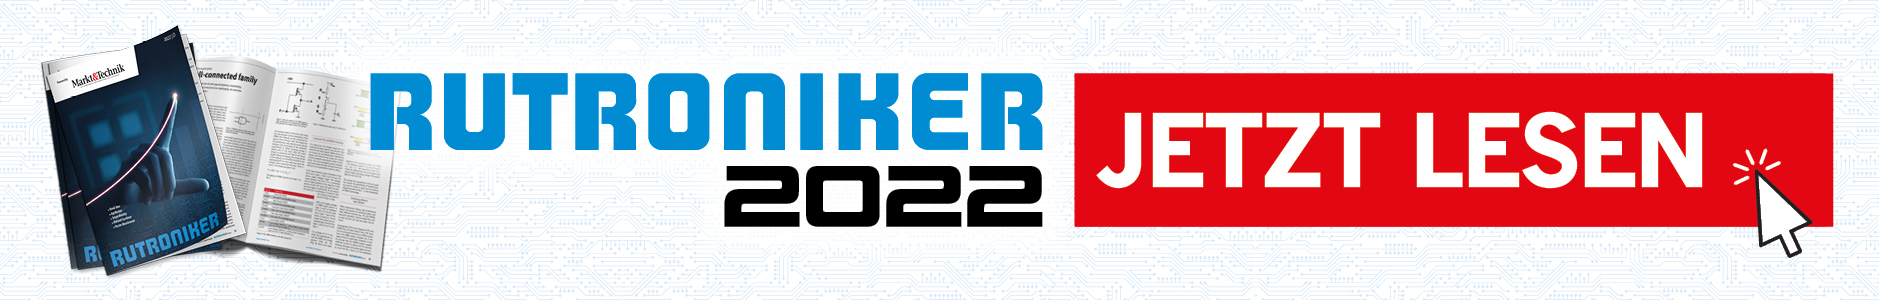 RUTRONIKER 2022 - Jetzt lesen